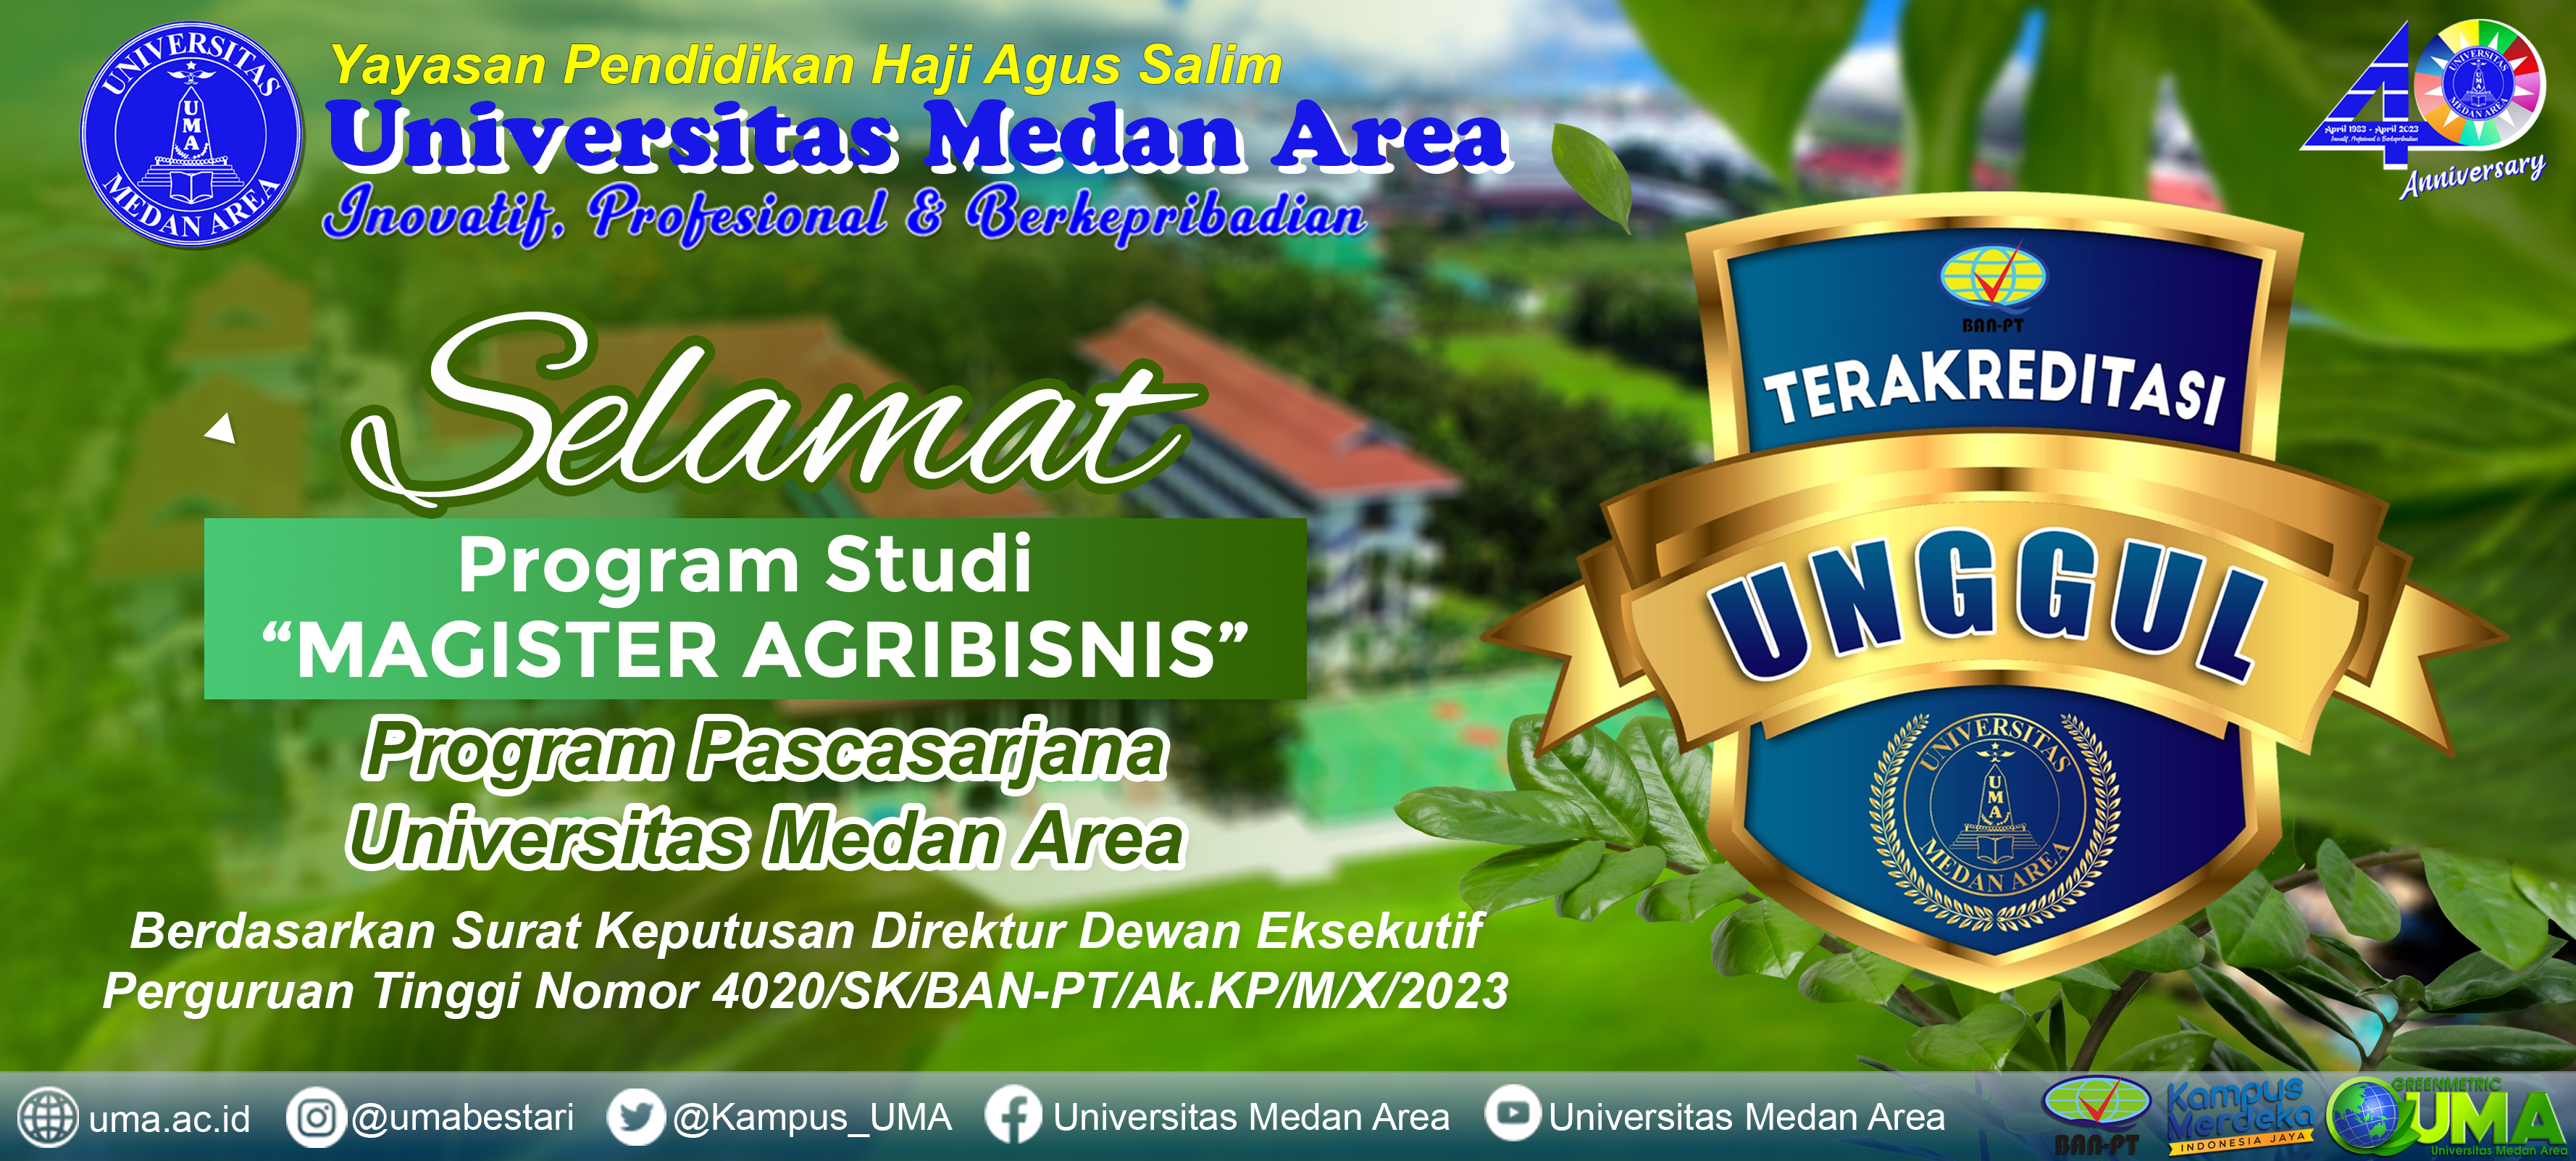 Selamat_Akreditasi_Program_Studi_Magister_Agribisnis_Universitas_Medan_Area_Meraih_Unggul.jpg